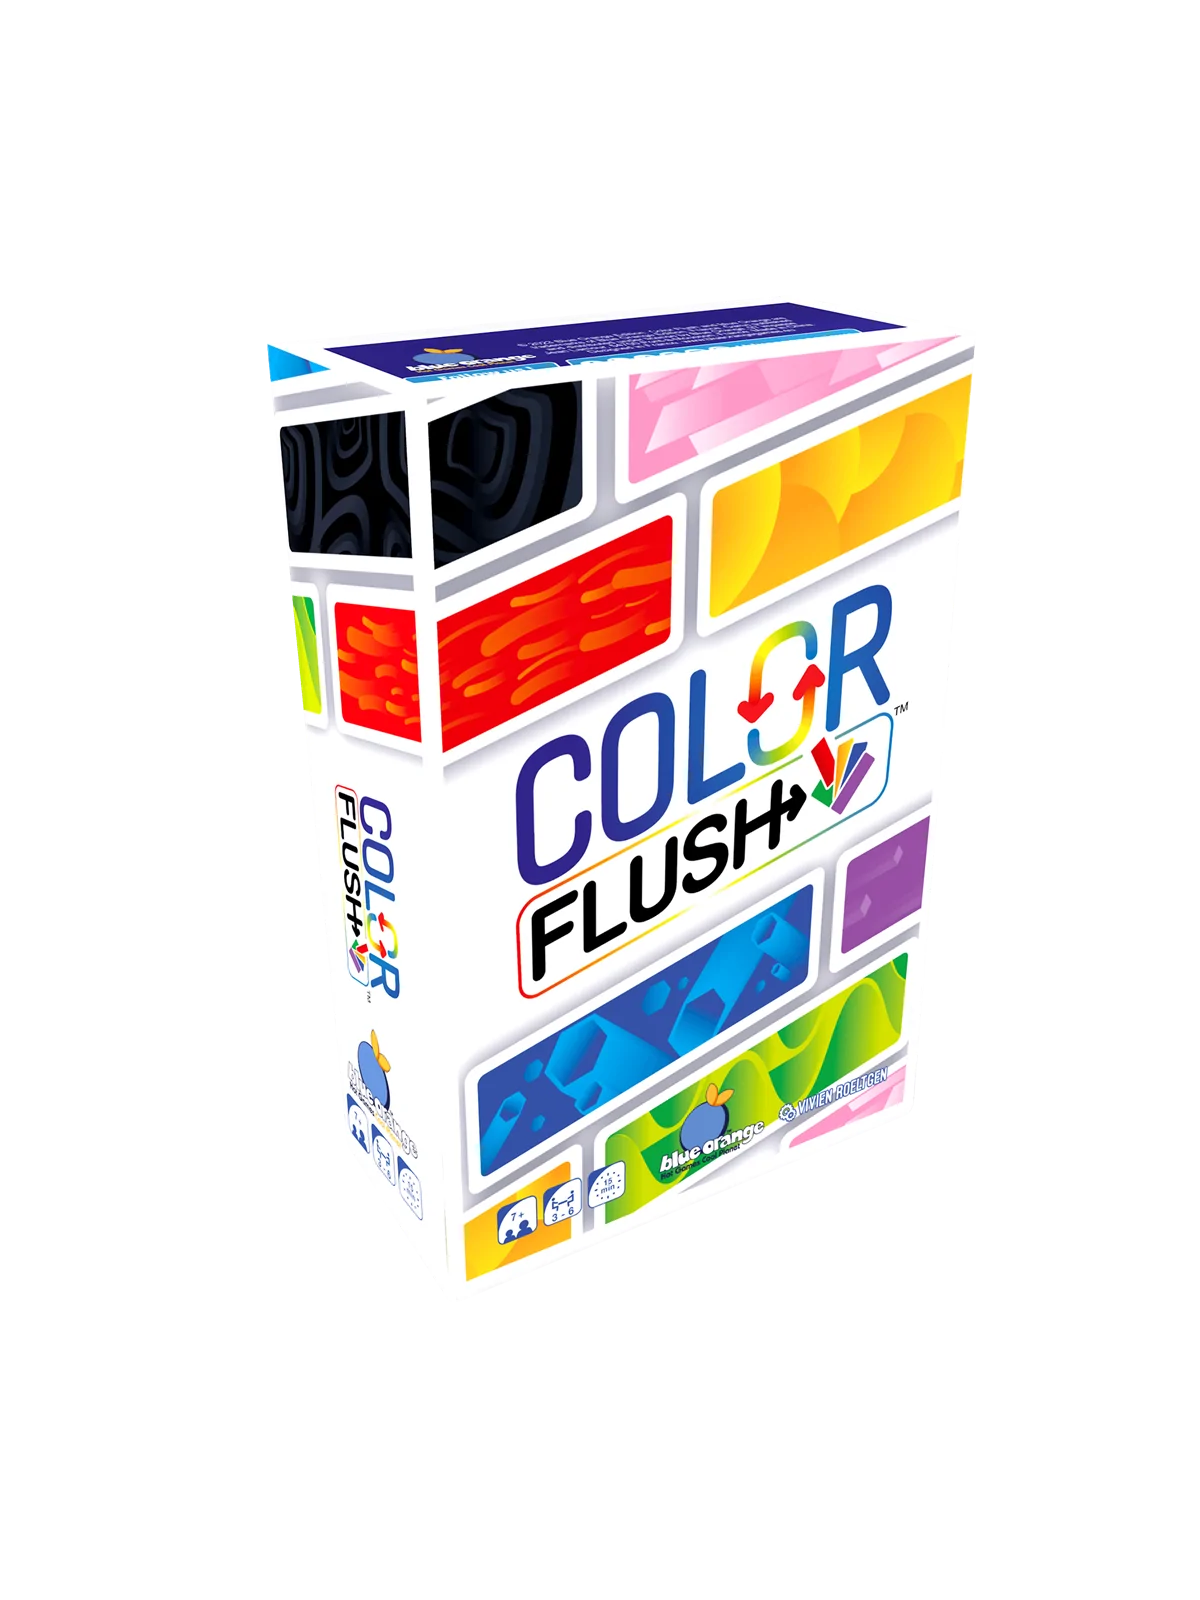 Comprar Color Flush barato al mejor precio 10,79 € de Blue Orange Game